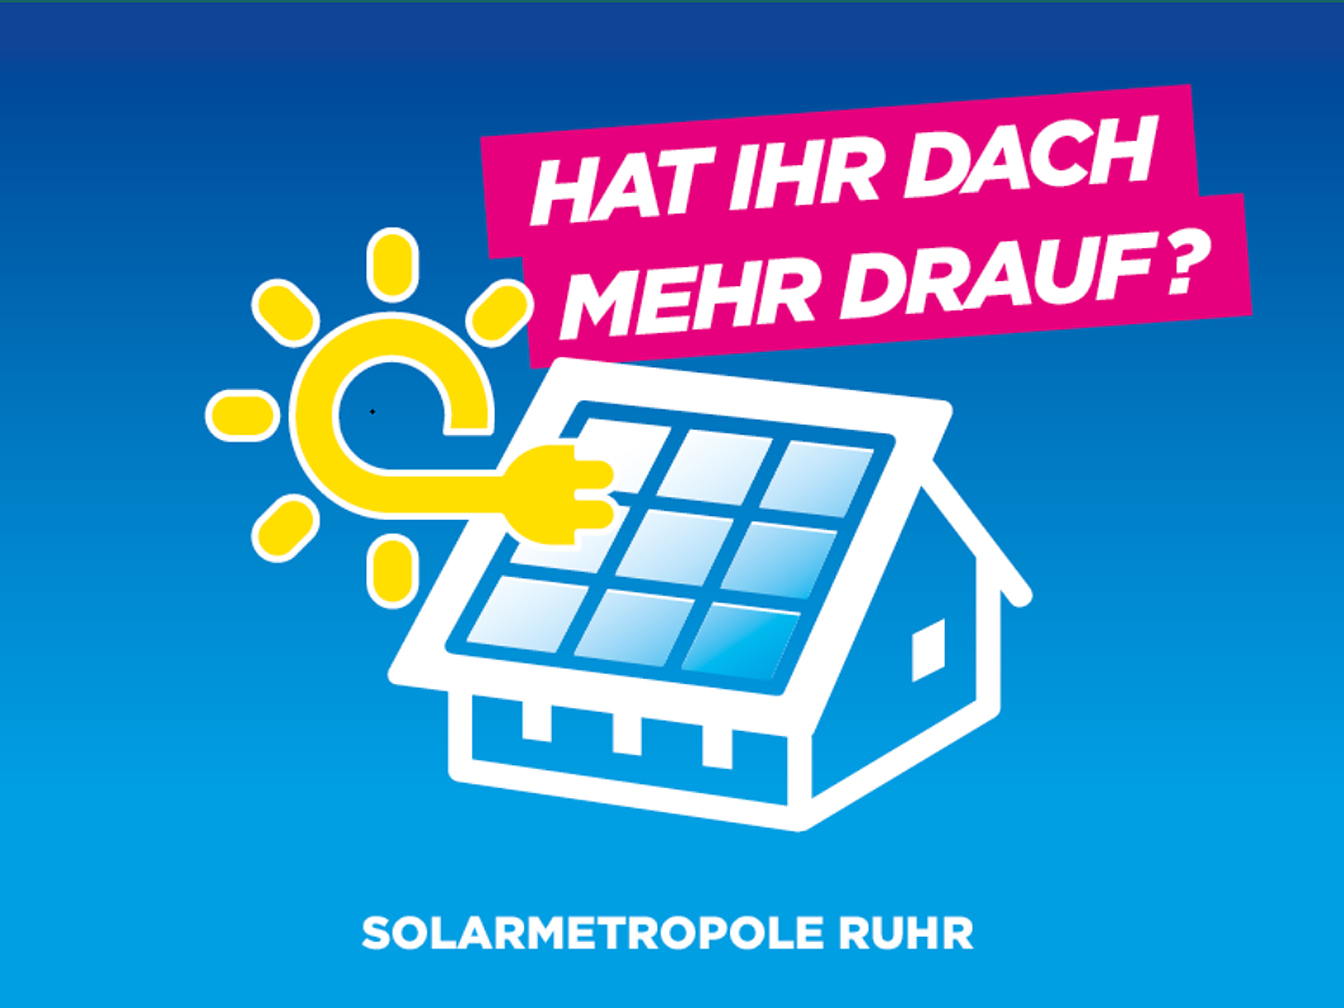 Motiv der Kampagne Solarmetropole Ruhr mit einem stilisierten Haus und einer angedeuteten Sonne, die auf die Kollektoren strahlt und der Text "Hat ihr Dach mehr drauf?